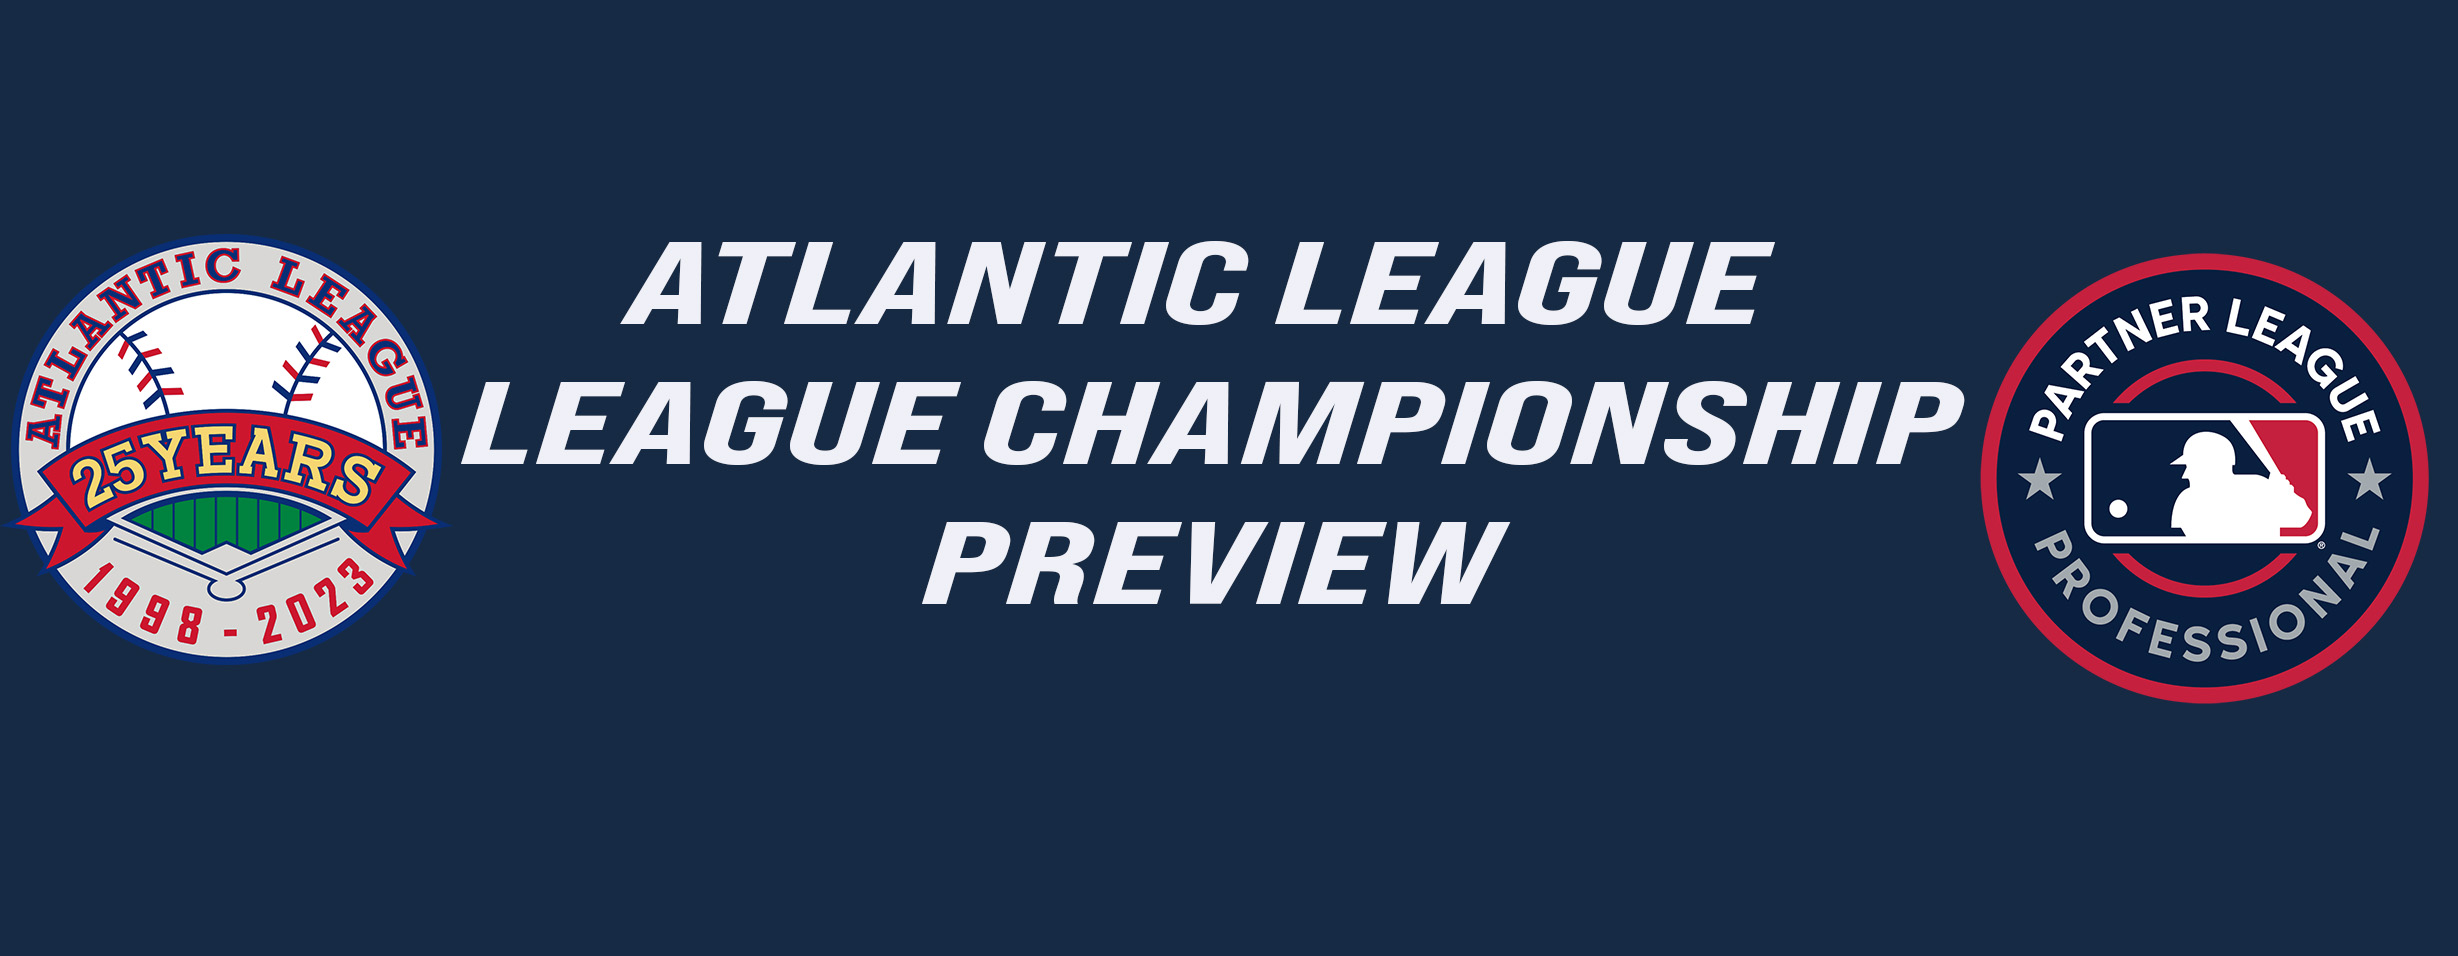 Atlantic League Championship Series Preview